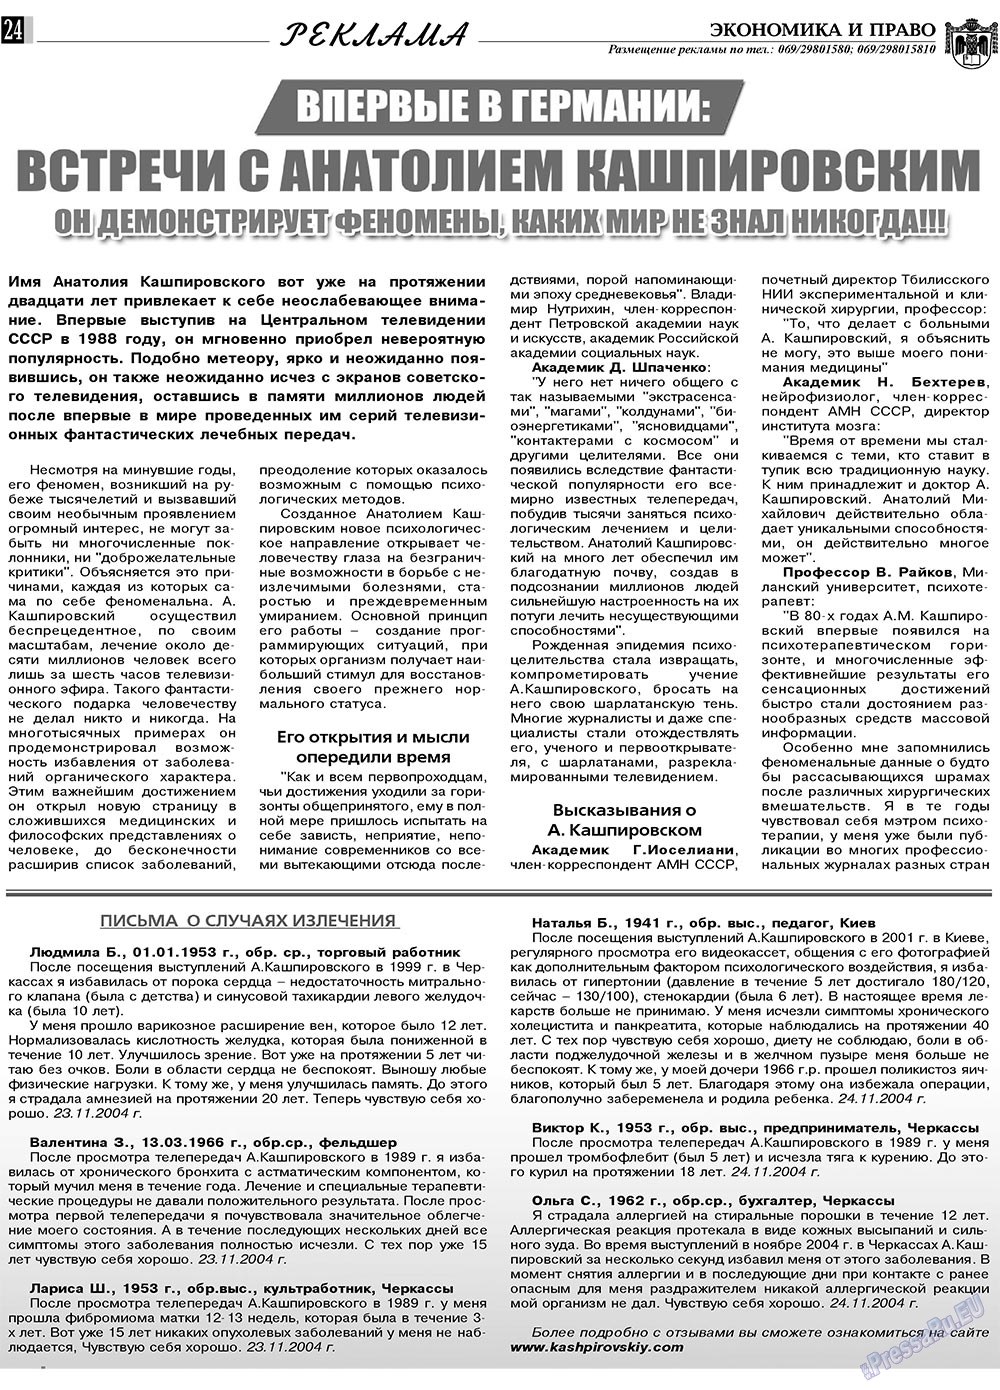 Экономика и право, газета. 2010 №3 стр.24